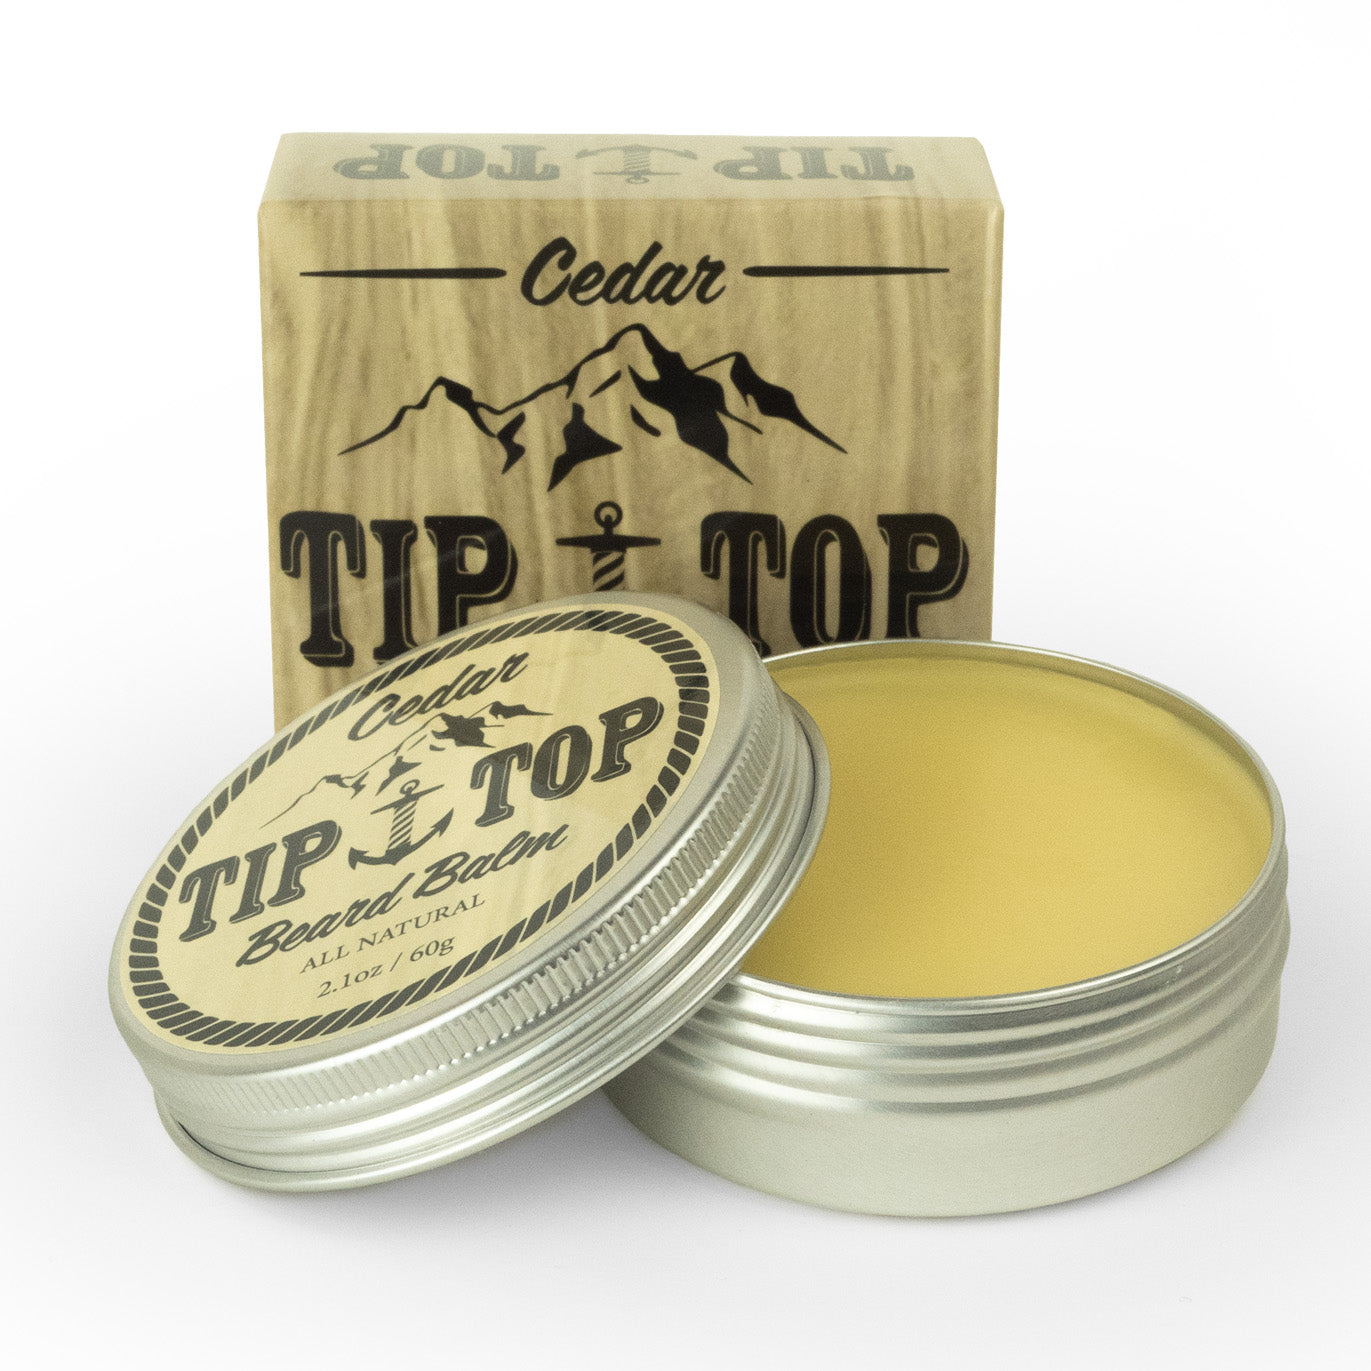 Tip Top Cedarwood Beard Balm